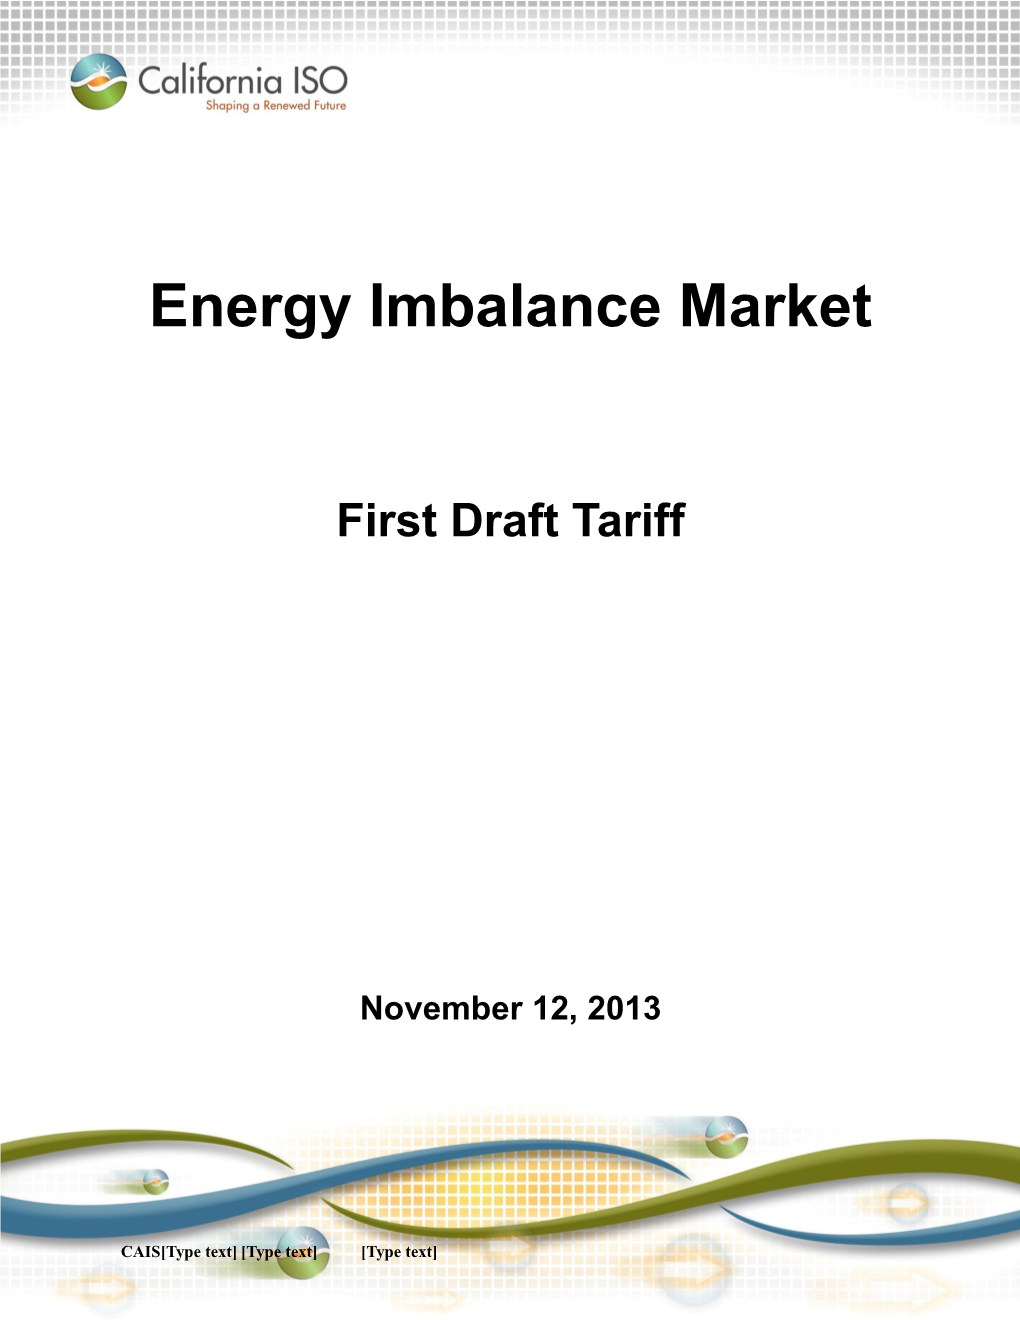 Draft Tariff Language - Energy Imbalance Market